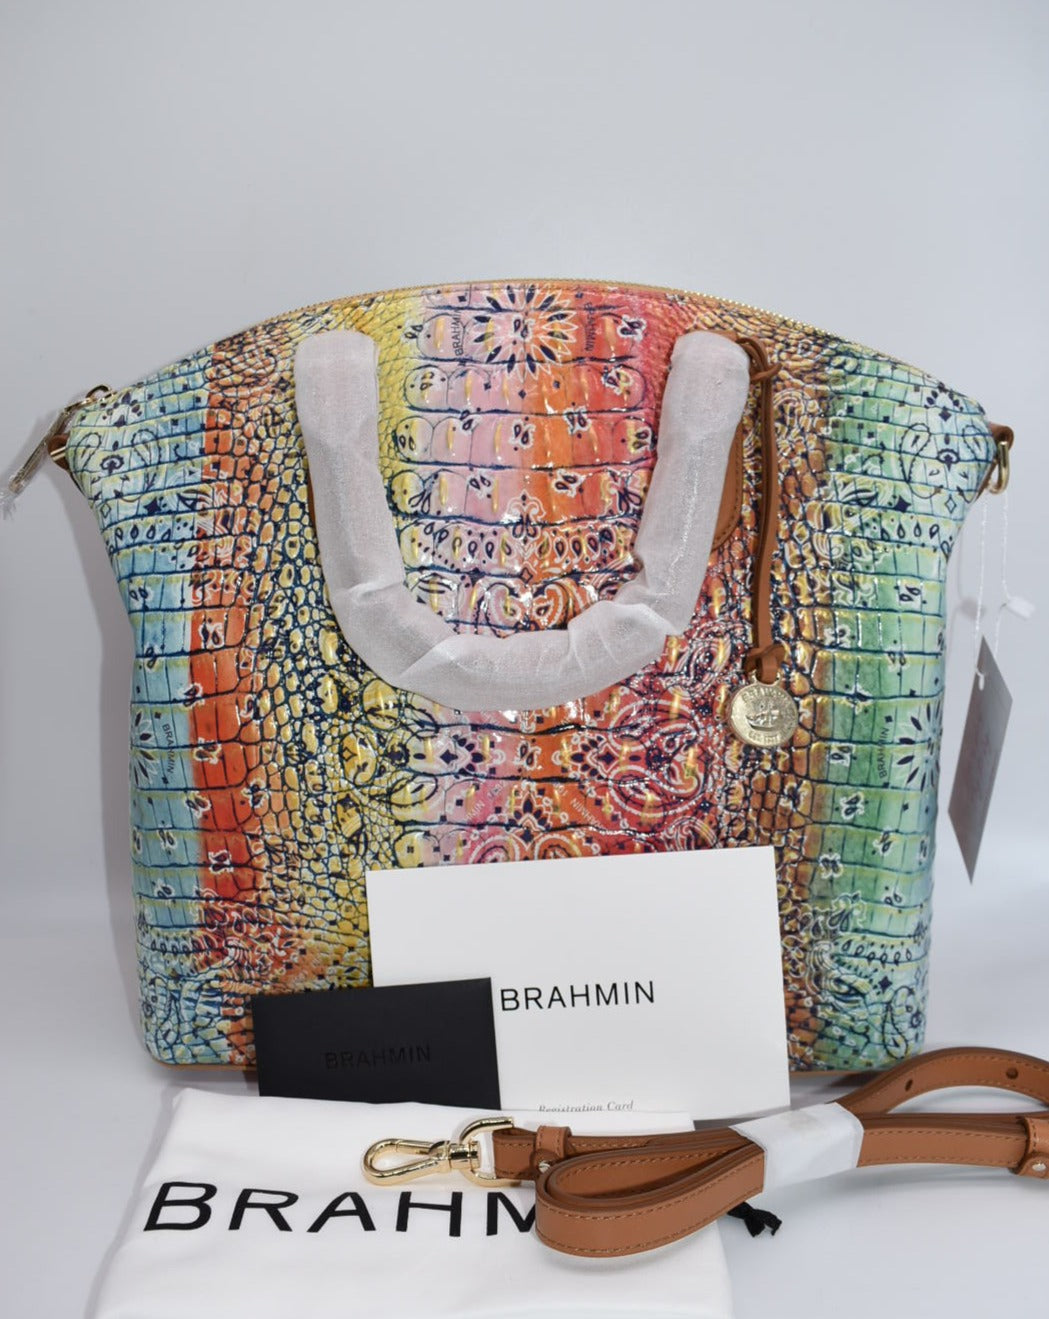 Brahmin Large Duxbury Satchel Bag in Multi Bandana